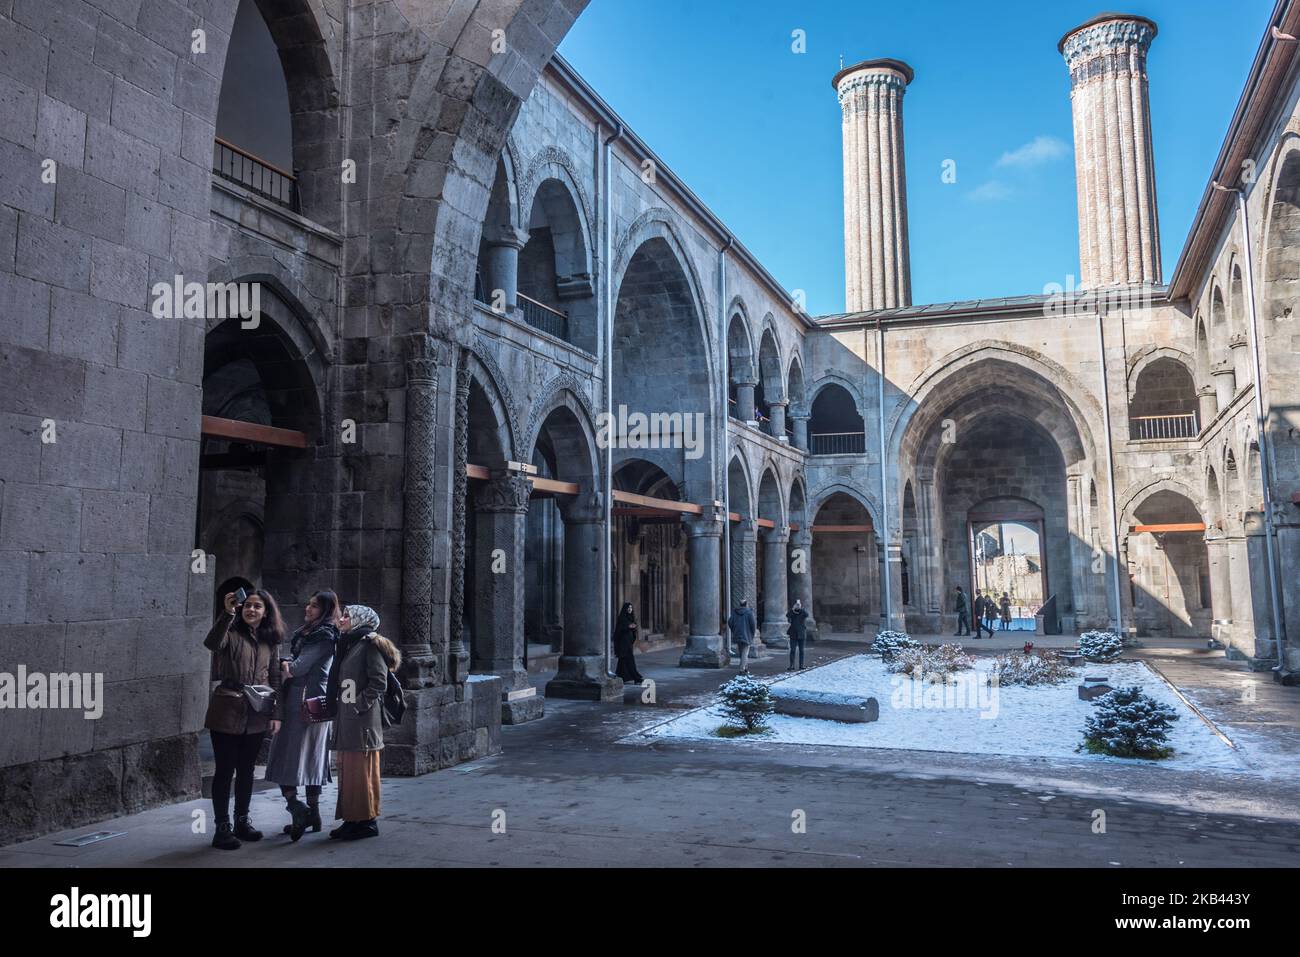 Le 9 décembre 2018, les touristes prennent des photos de l'architecture Seljuk tardive de la Cifte Minareli Medrese, également connue sous le nom de Twin Minaret Madrasa, dans le centre-ville historique d'Erzurum, une destination de sports d'hiver dans l'Anatolie orientale de la Turquie. (Photo de Diego Cupolo/NurPhoto) Banque D'Images